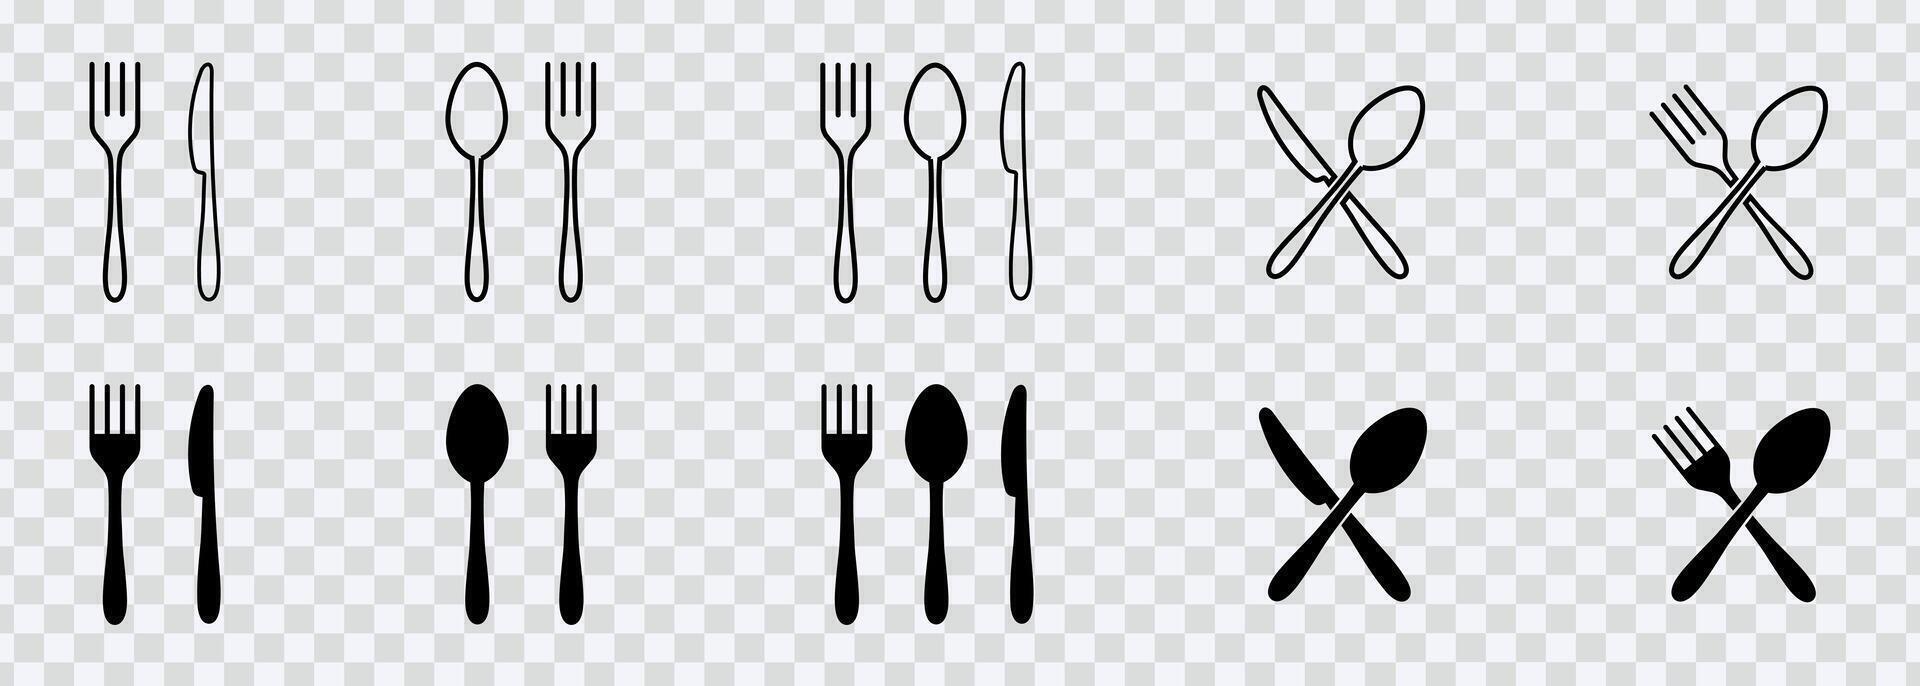 élever dessins avec assiette icône ensemble avec plat, fourchette, cuillère, et couteau illustrations, parfait pour divers applications. vecteur